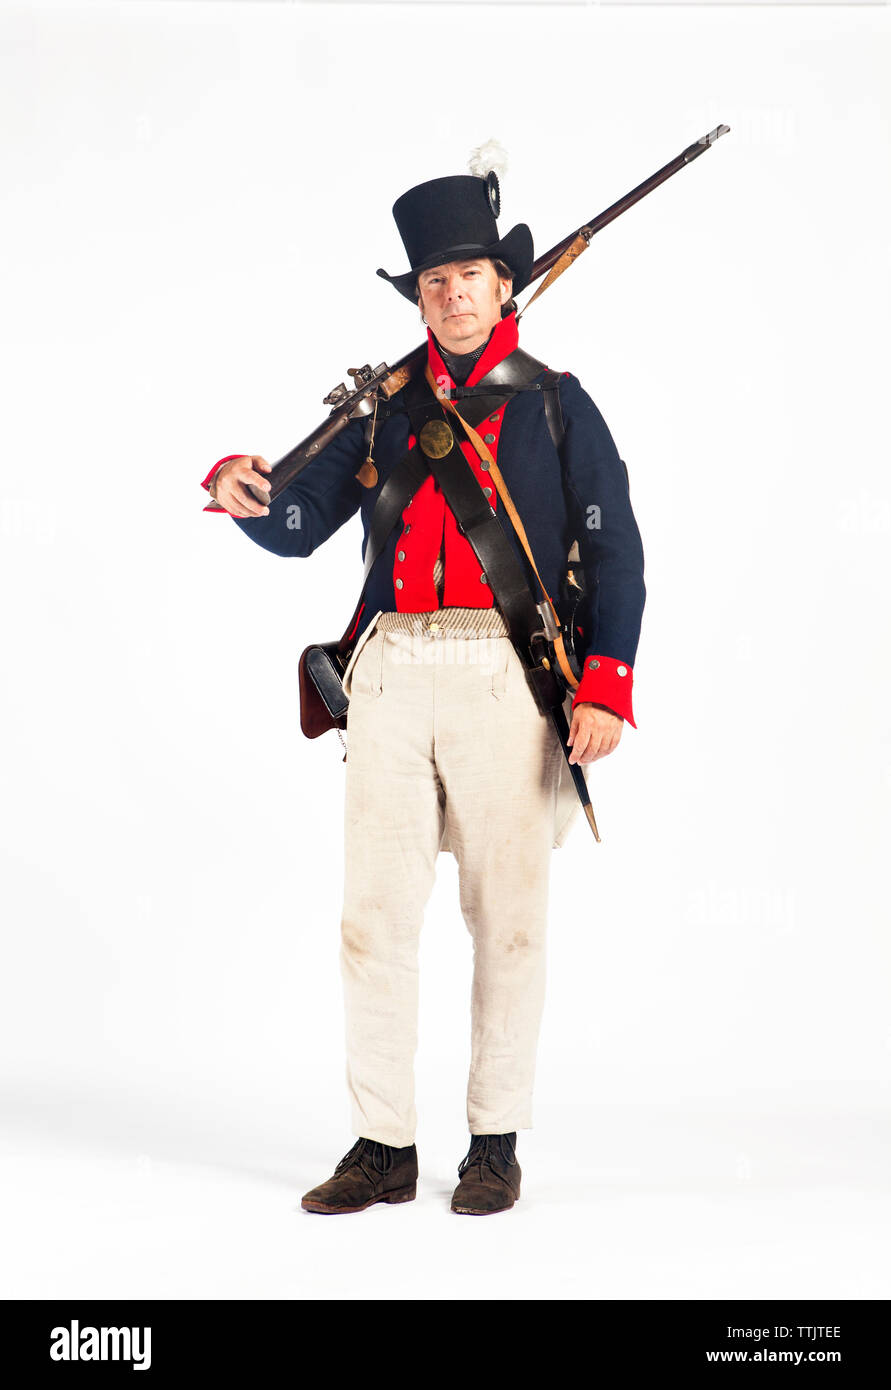 Retrato del hombre en traje de soldado del ejército, estando en de fondo blanco Fotografía de stock - Alamy